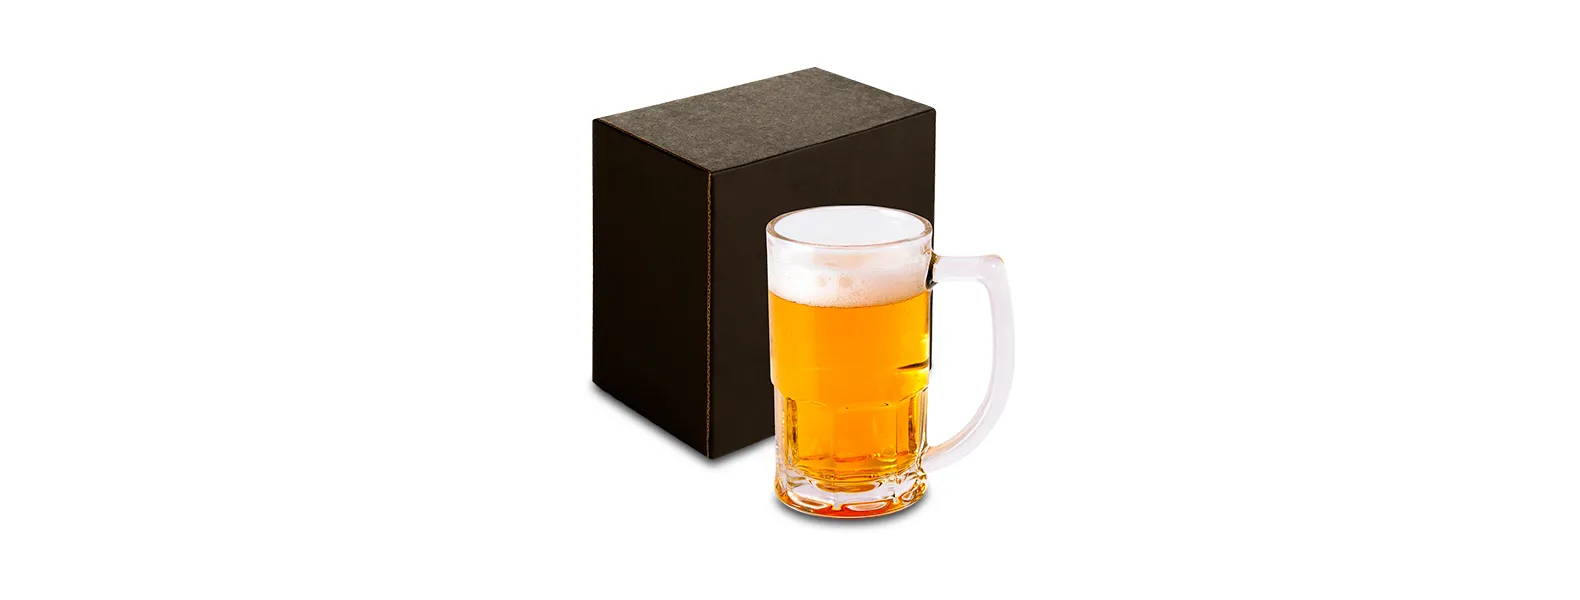 Caneca de Vidro para Chopp ou Cerveja. Capacidade: 340 ml